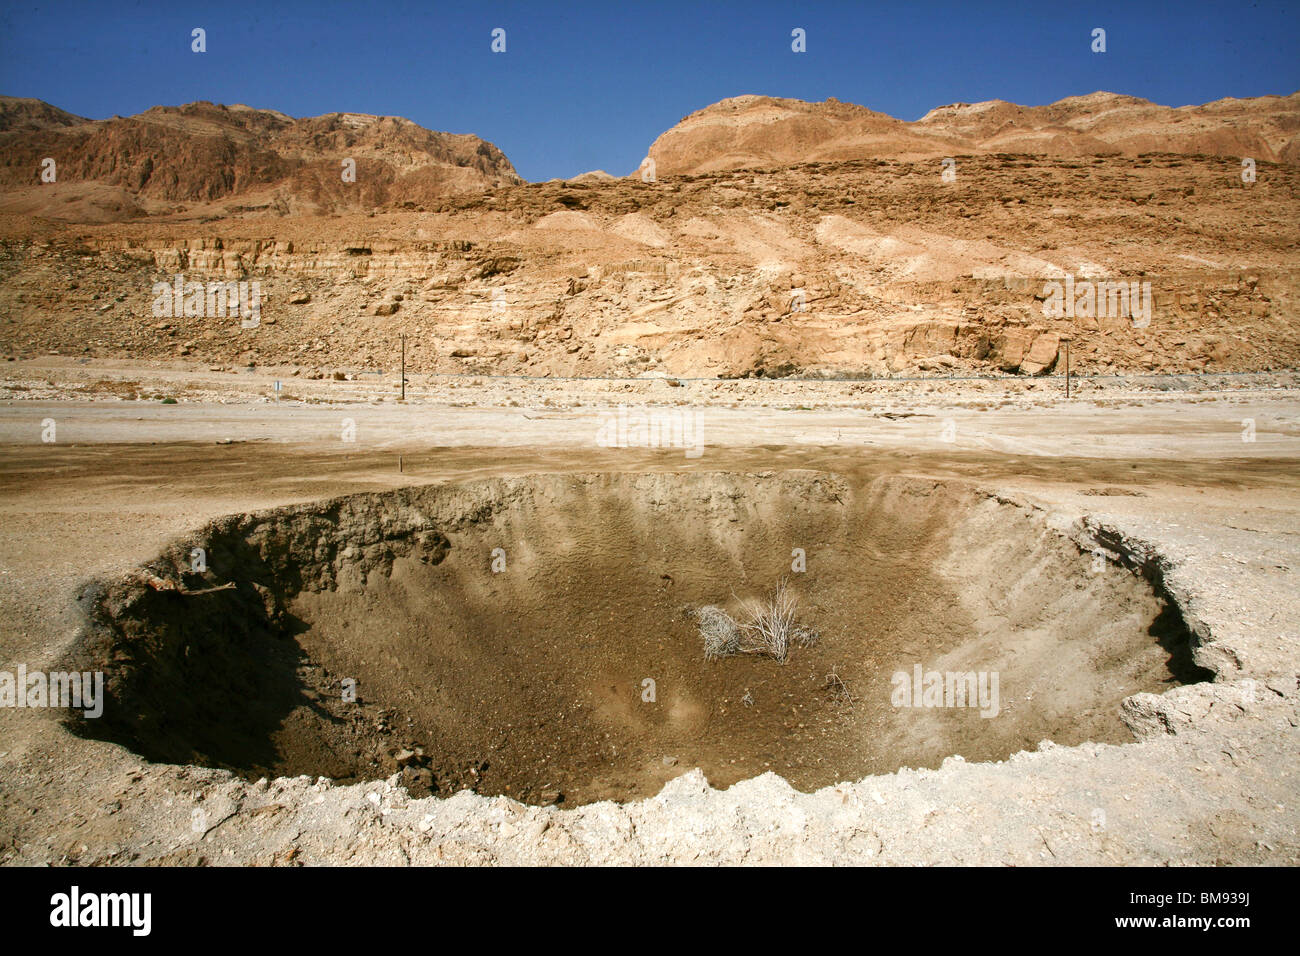 Israël, la Mer Morte une dépression causée par le recul de niveau d'eau de la Mer Morte Banque D'Images